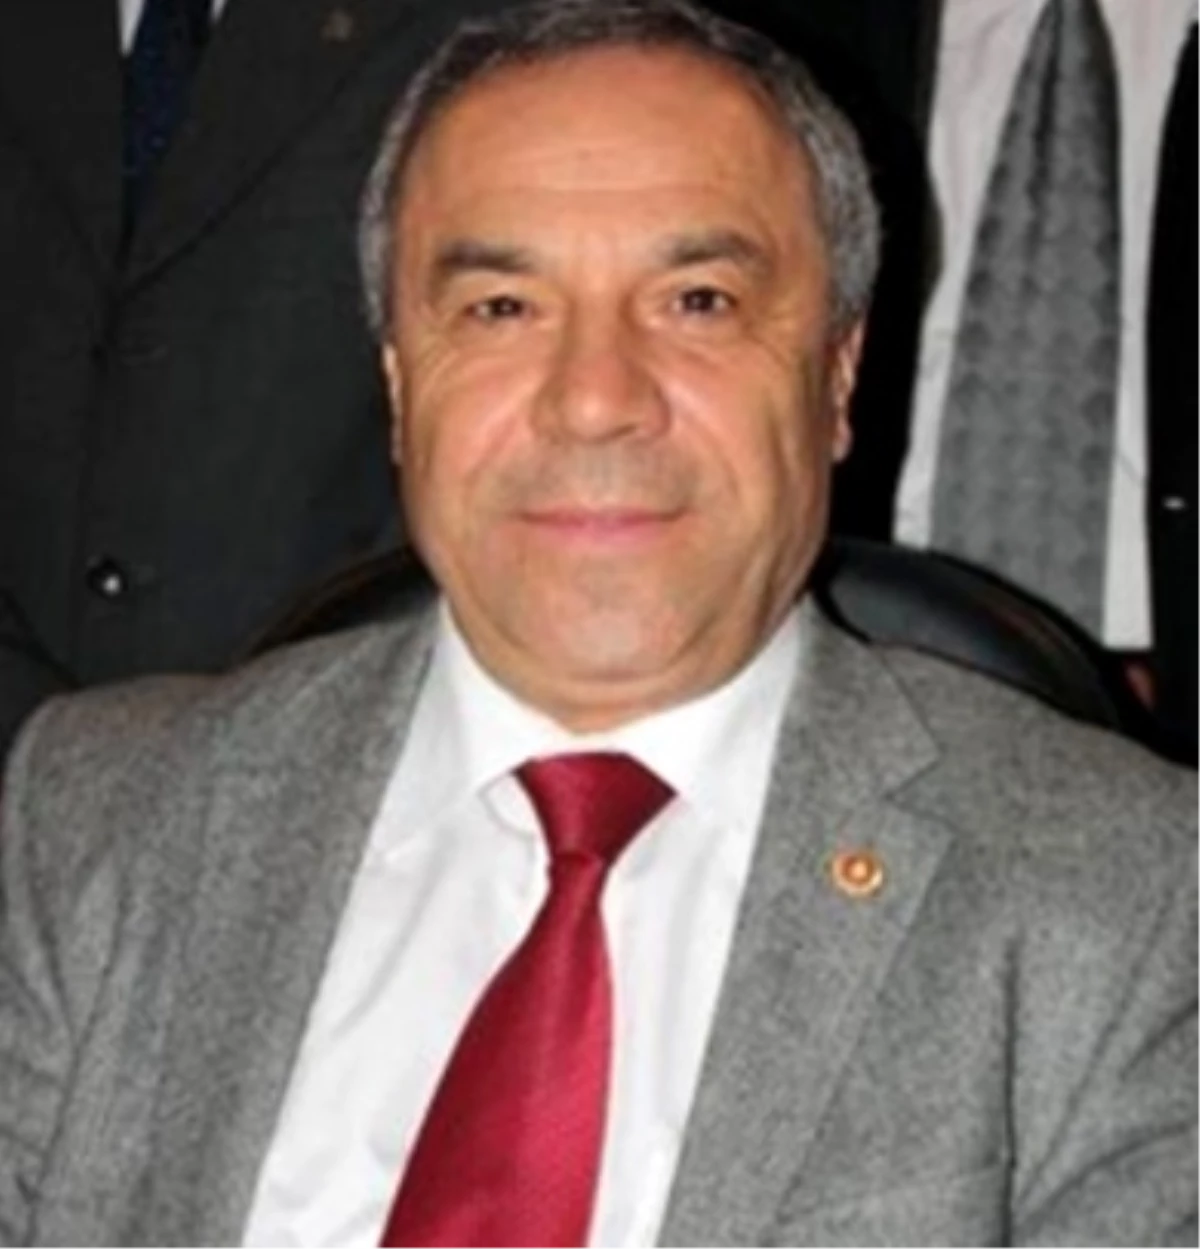 DSP Genel Sekreteri Dr. Hasan Erçelebi Açıklaması